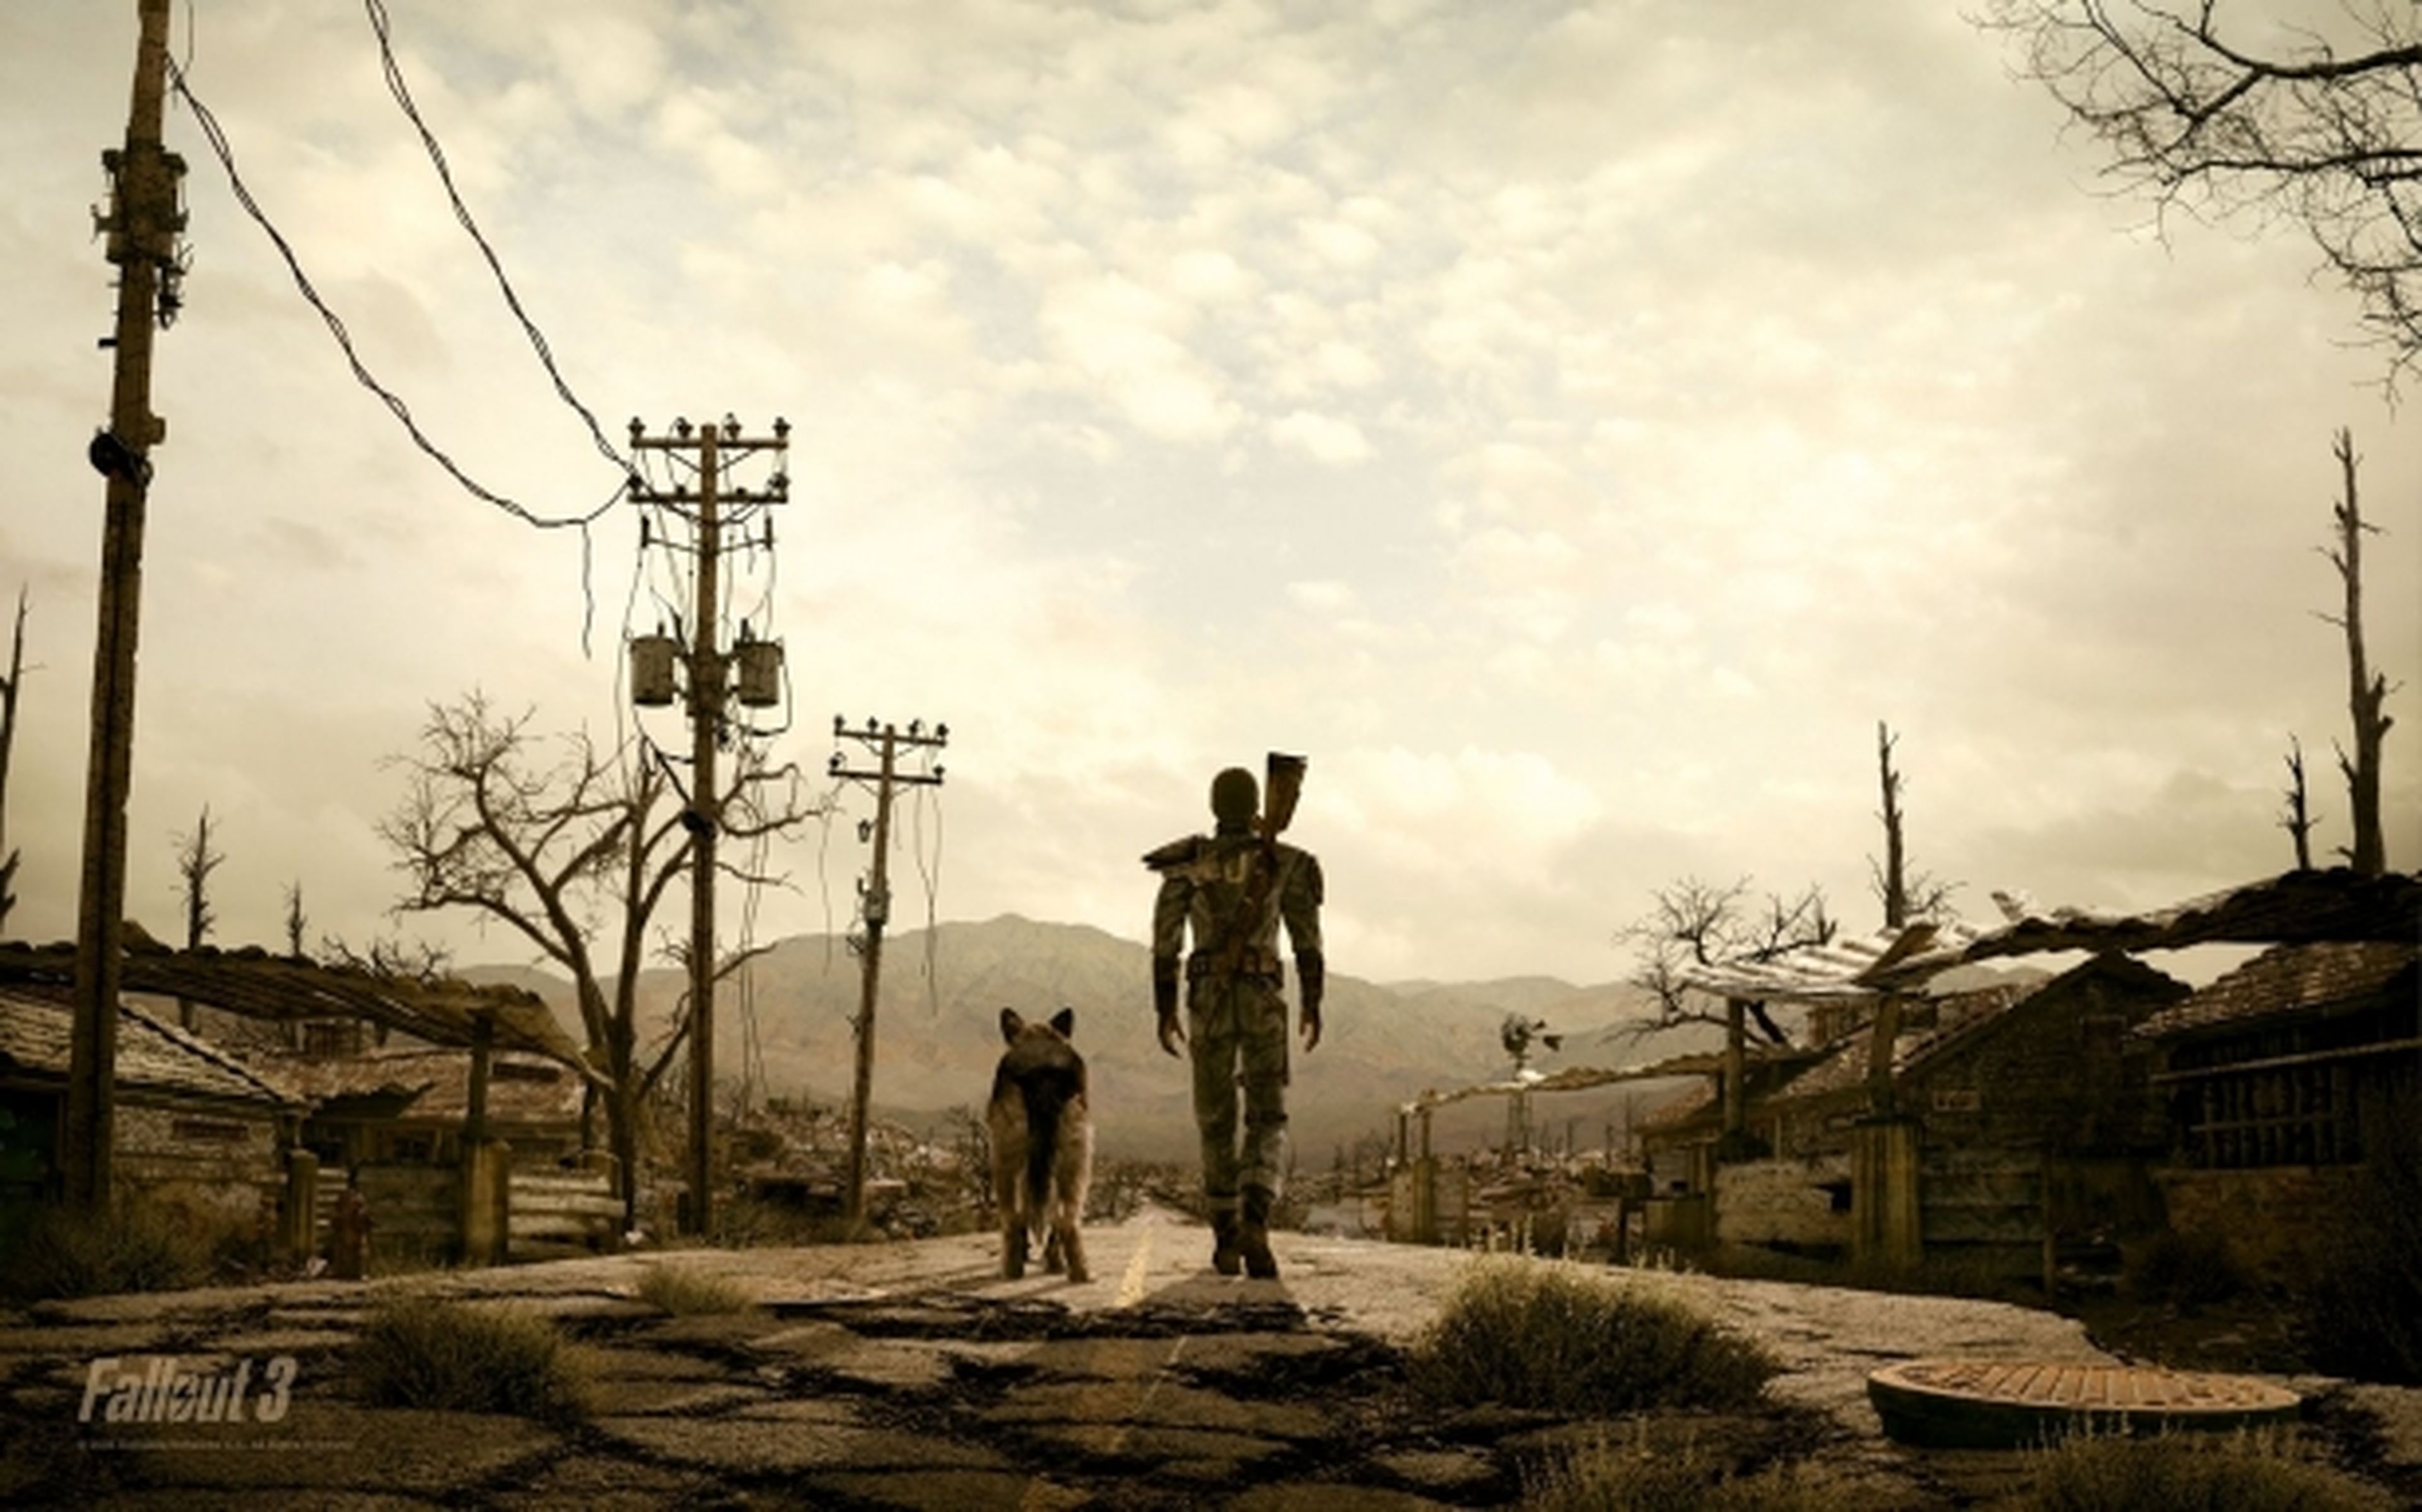 La teaser web que "sugiere" Fallout 4 se actualiza